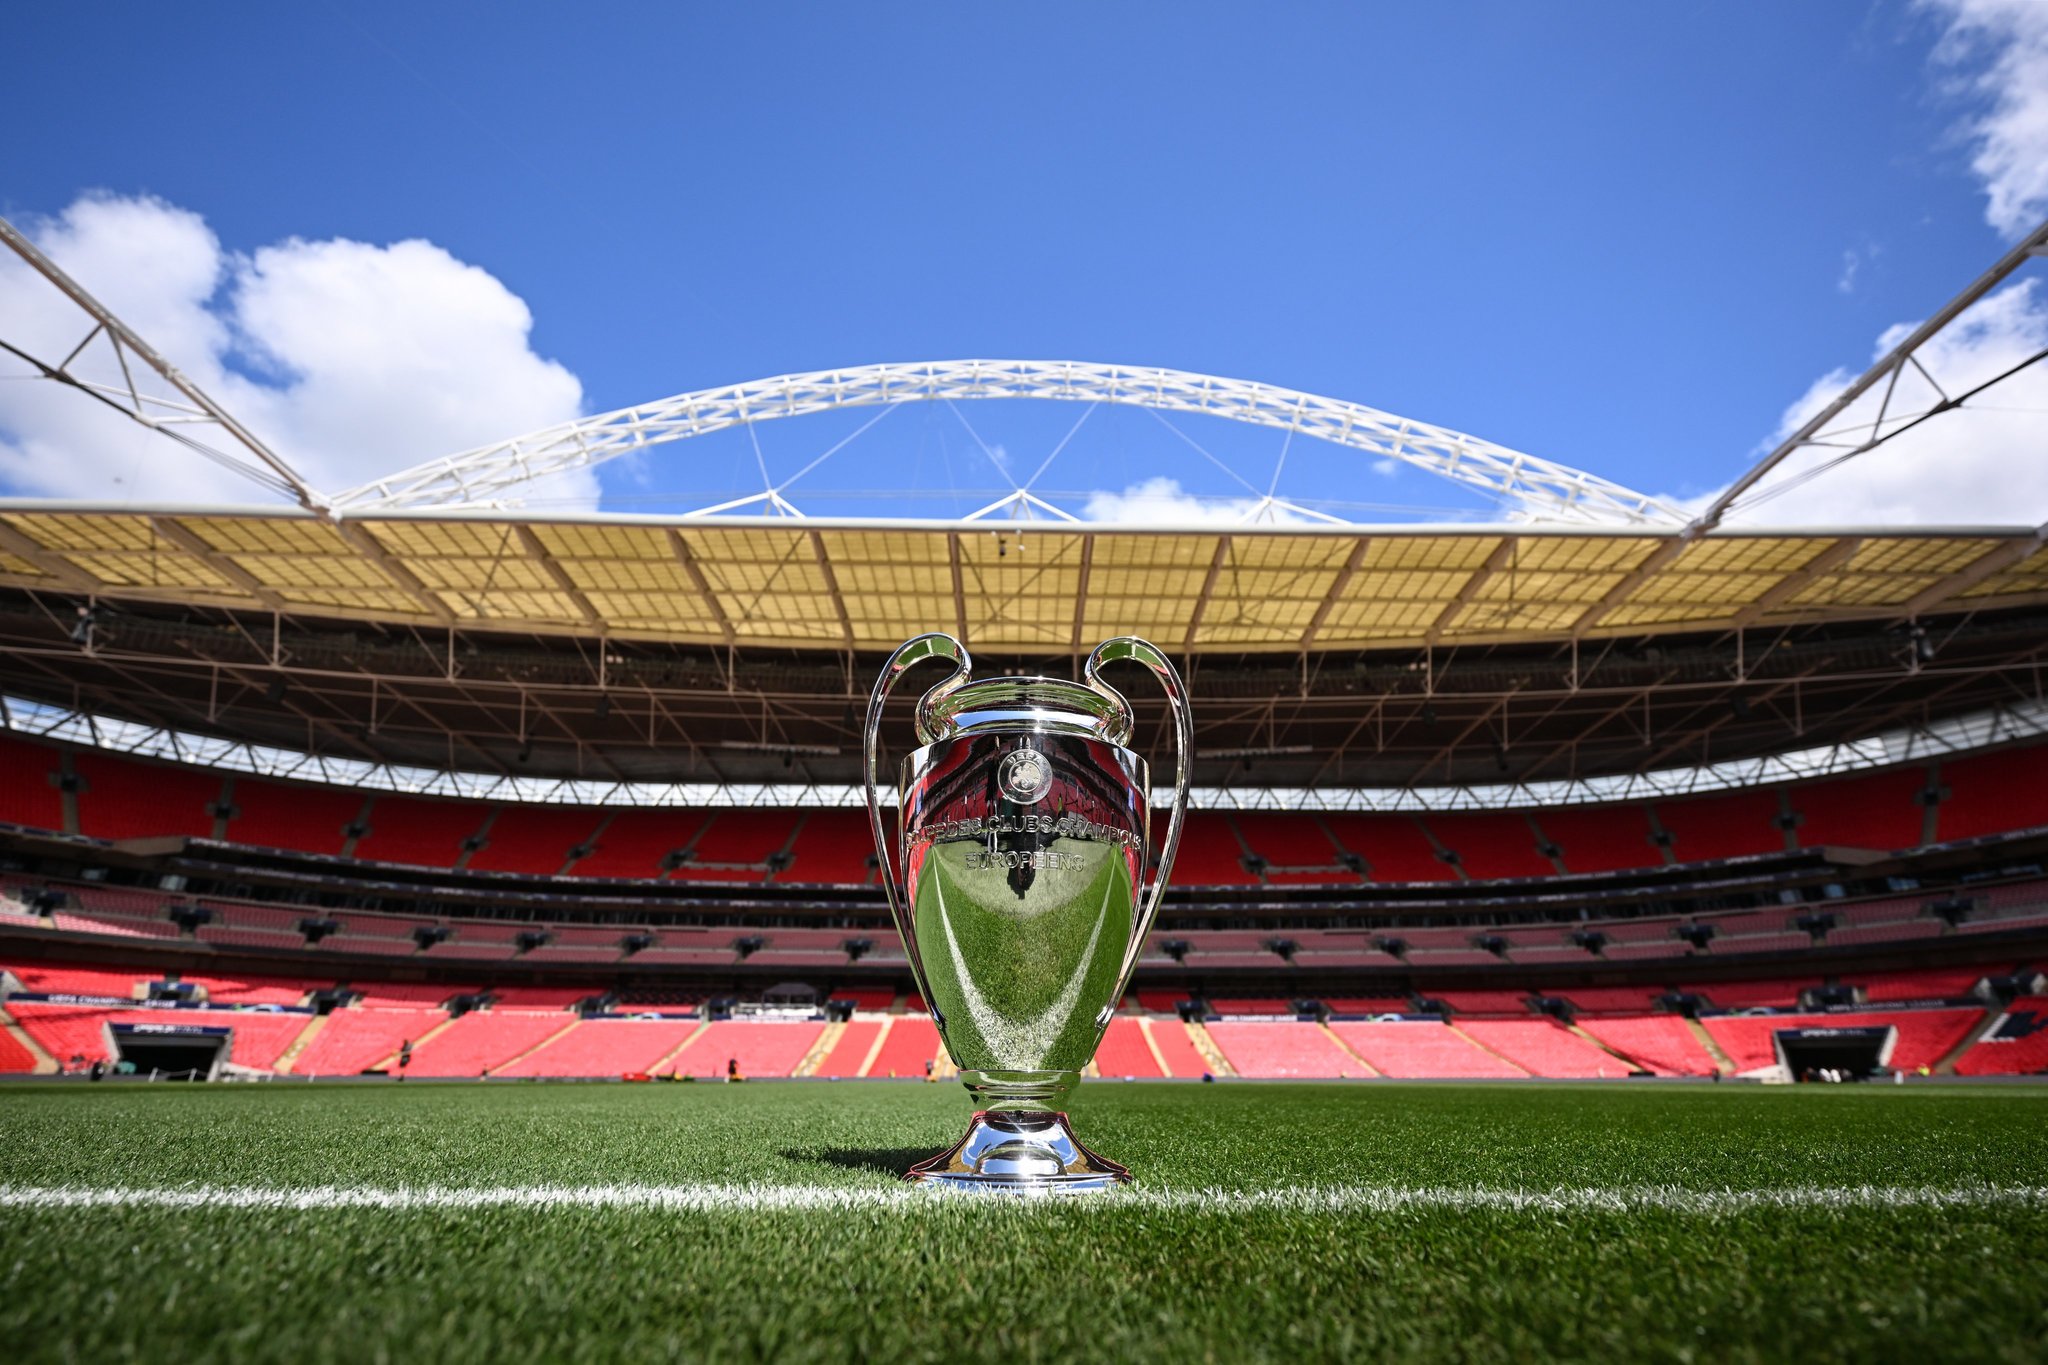 Estadio de Wembley, la espectacular sede de la final de Champions entre Real Madrid y Dortmund